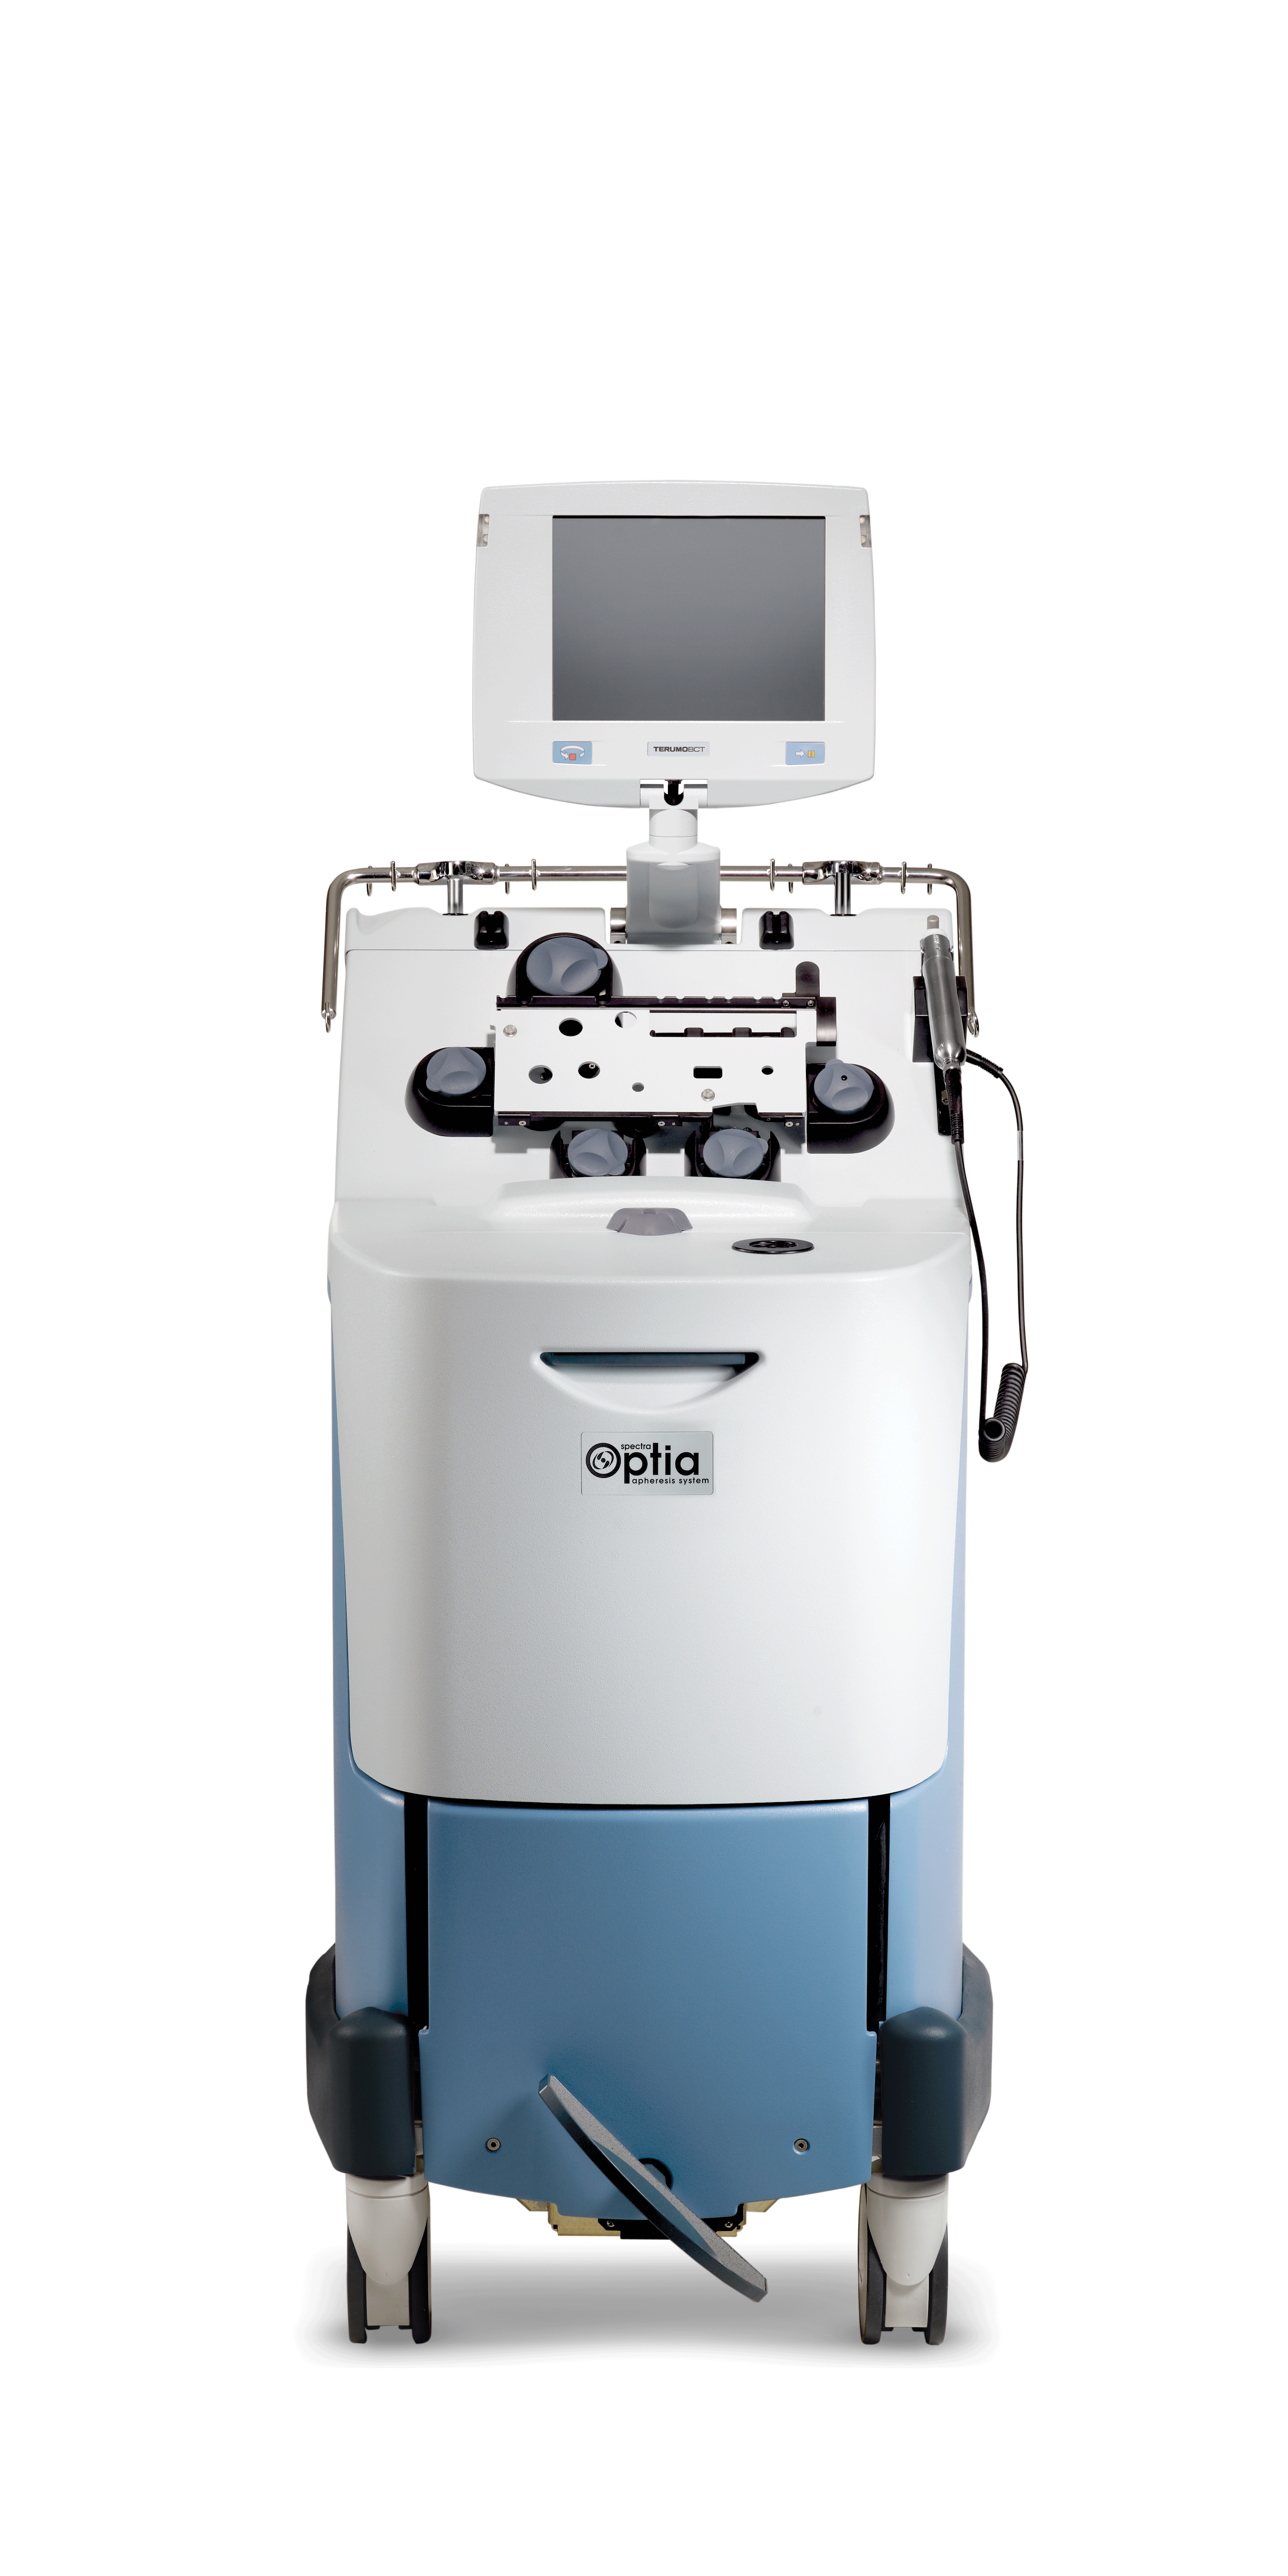 Terumo's Spectra Optia® Apheresis System